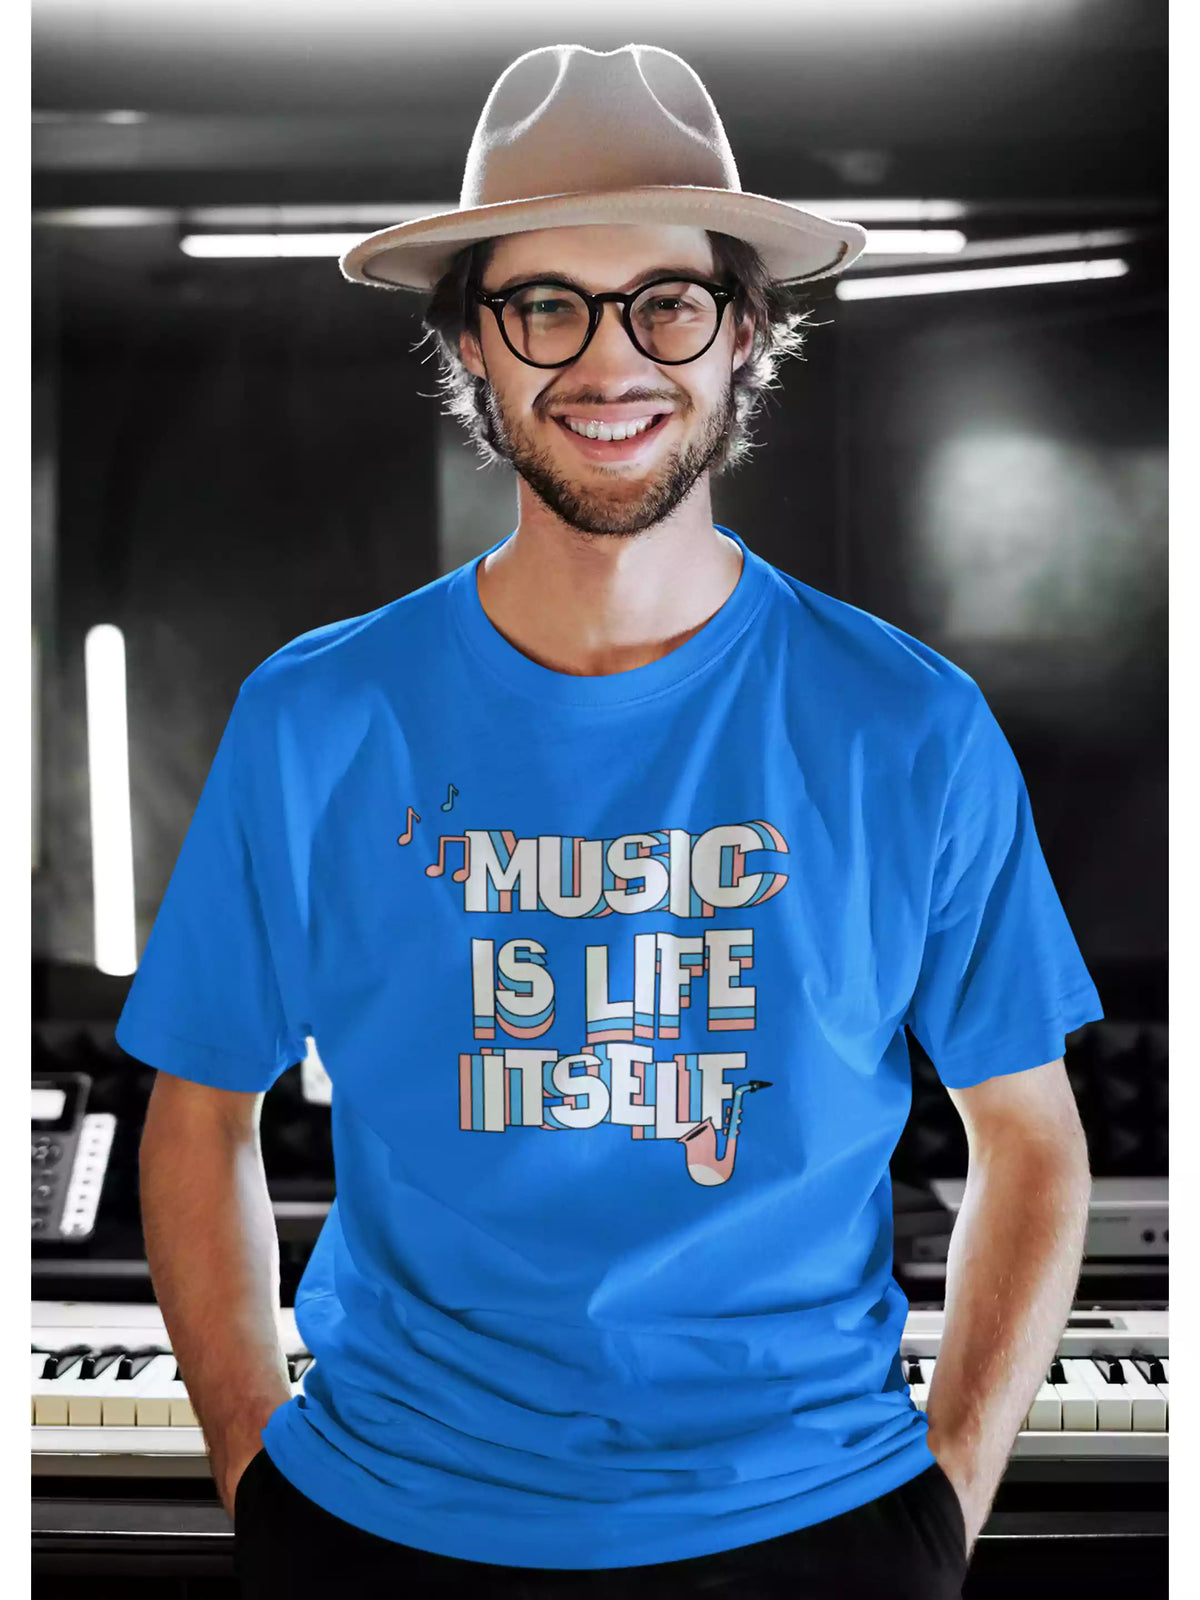 Life Itself - Sukhiaatma Unisex Graphic Printed Royal Blue T-shirt